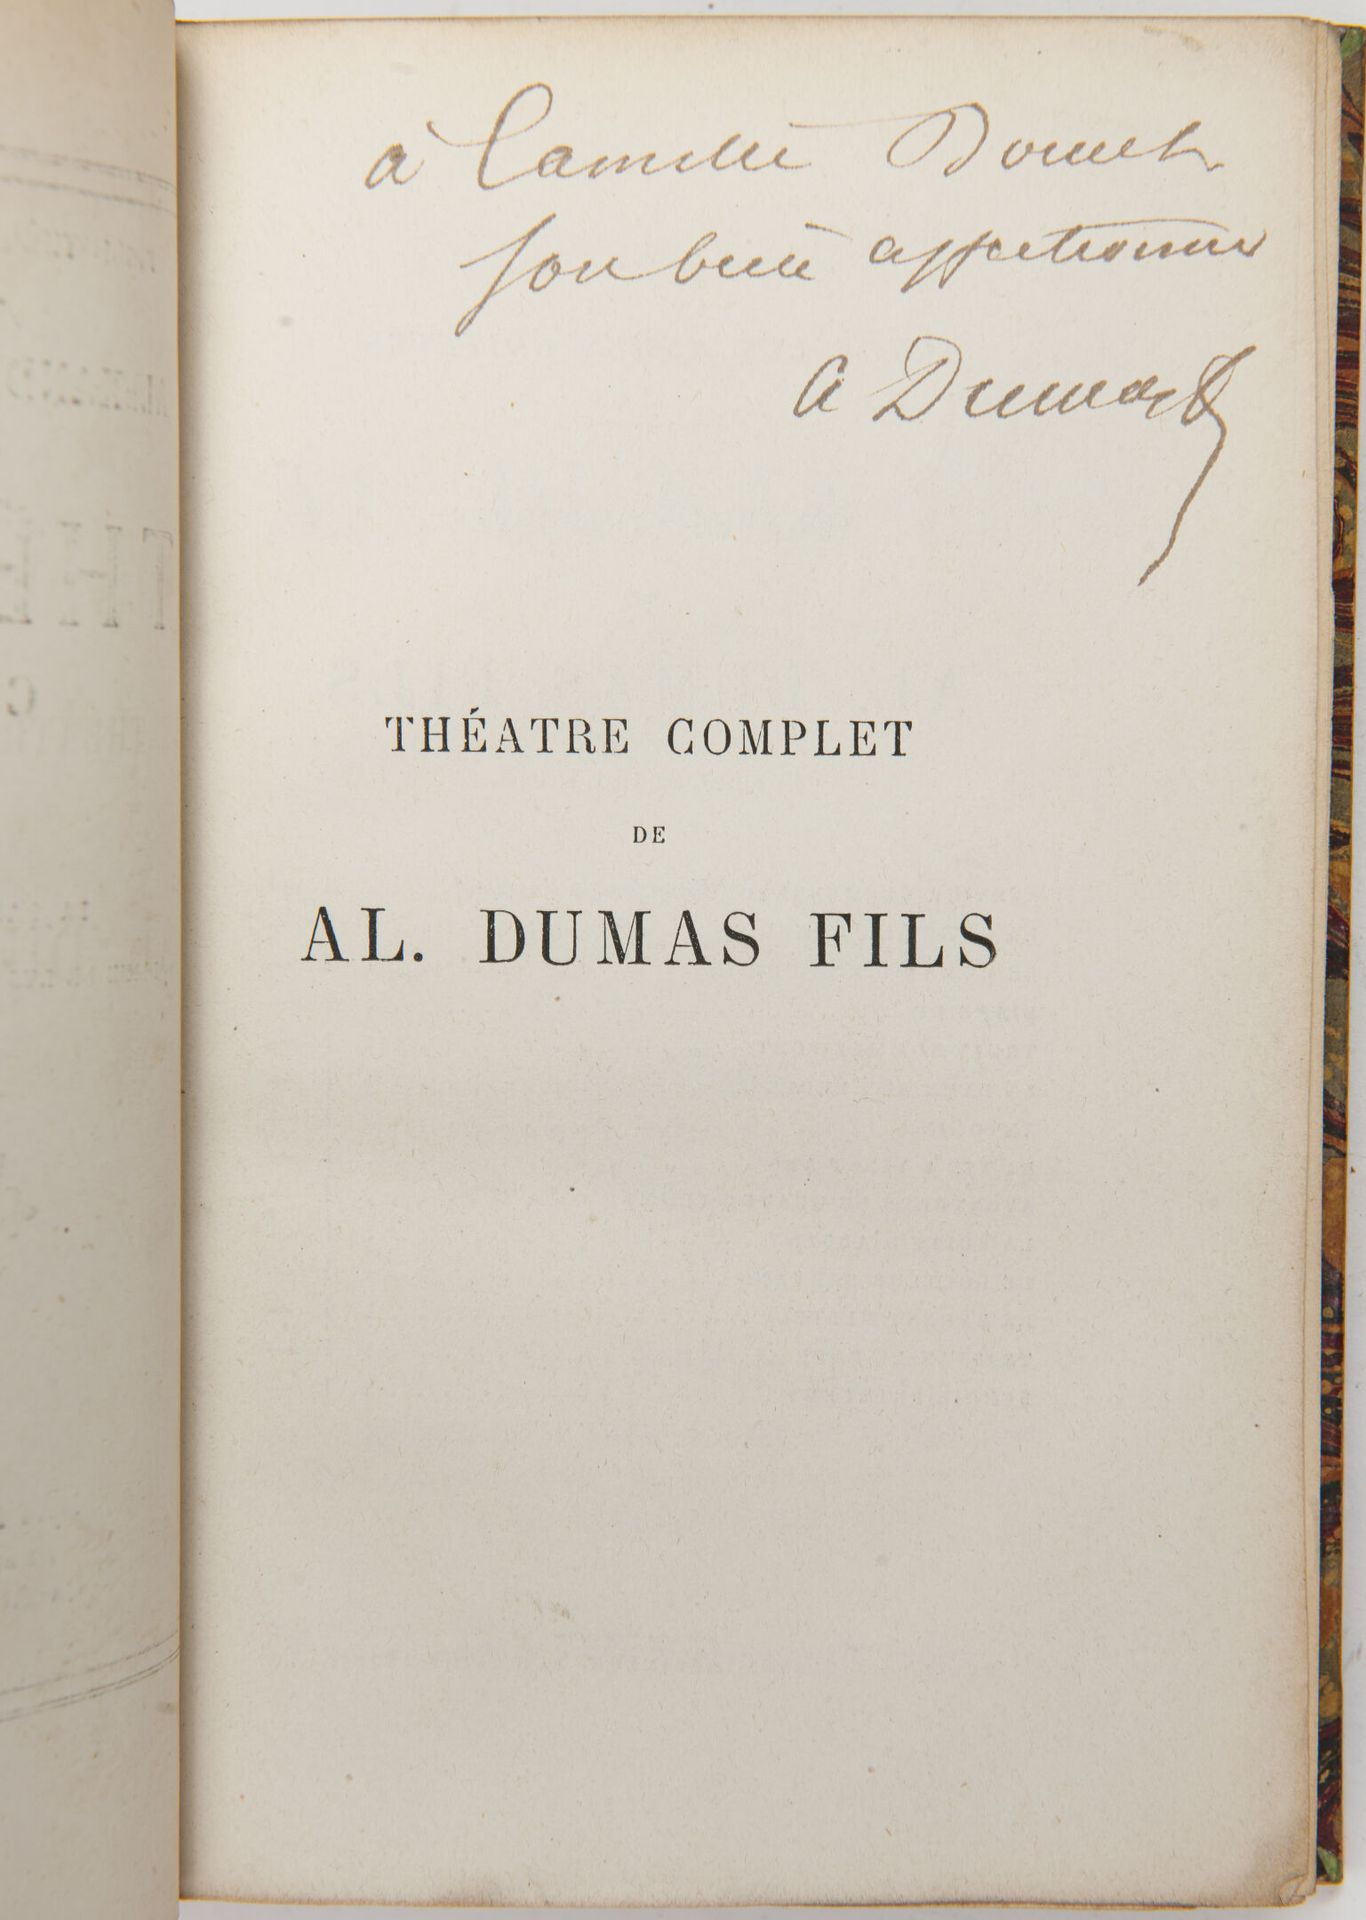 DUMAS fils (Alexandre). Théâtre complet.

Paris, Michel Lévy, 1868-1880, 6 vol. &hellip;